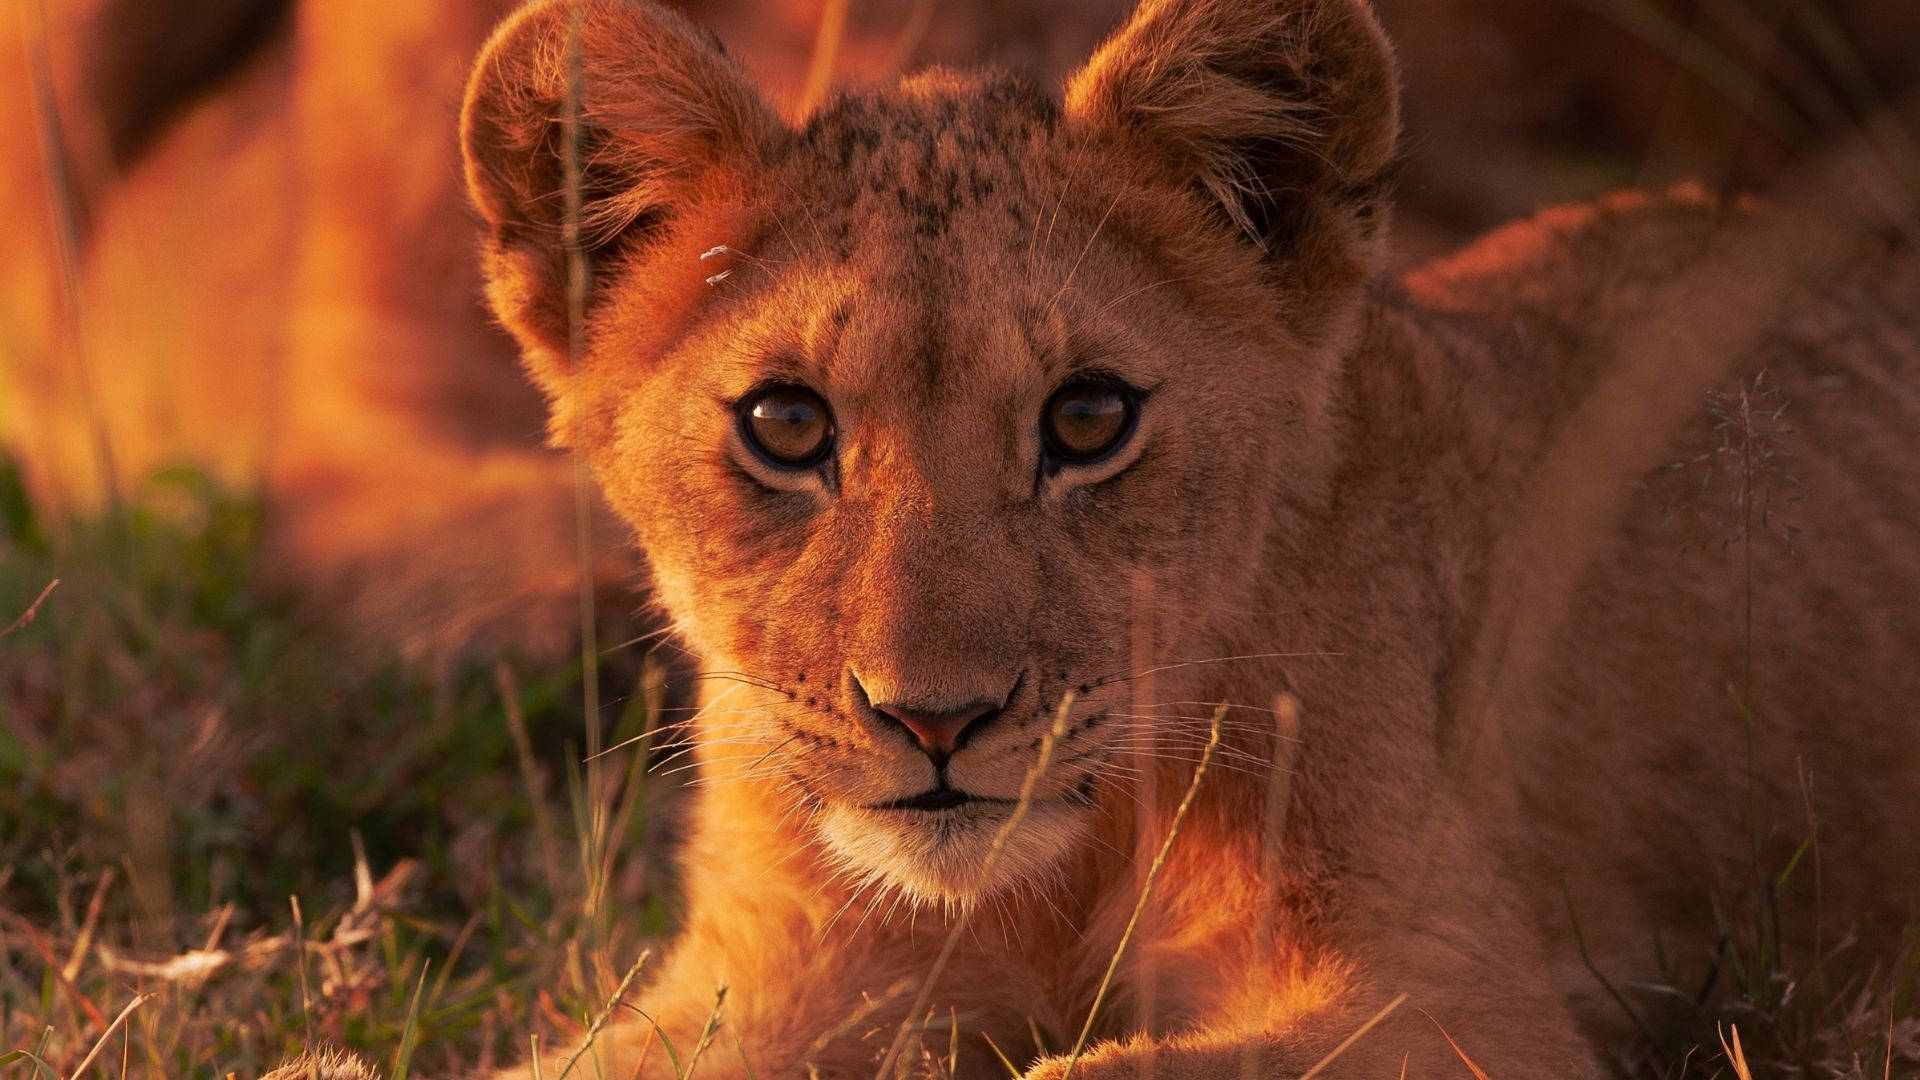 Staring Baby Animal Lion Wallpaper